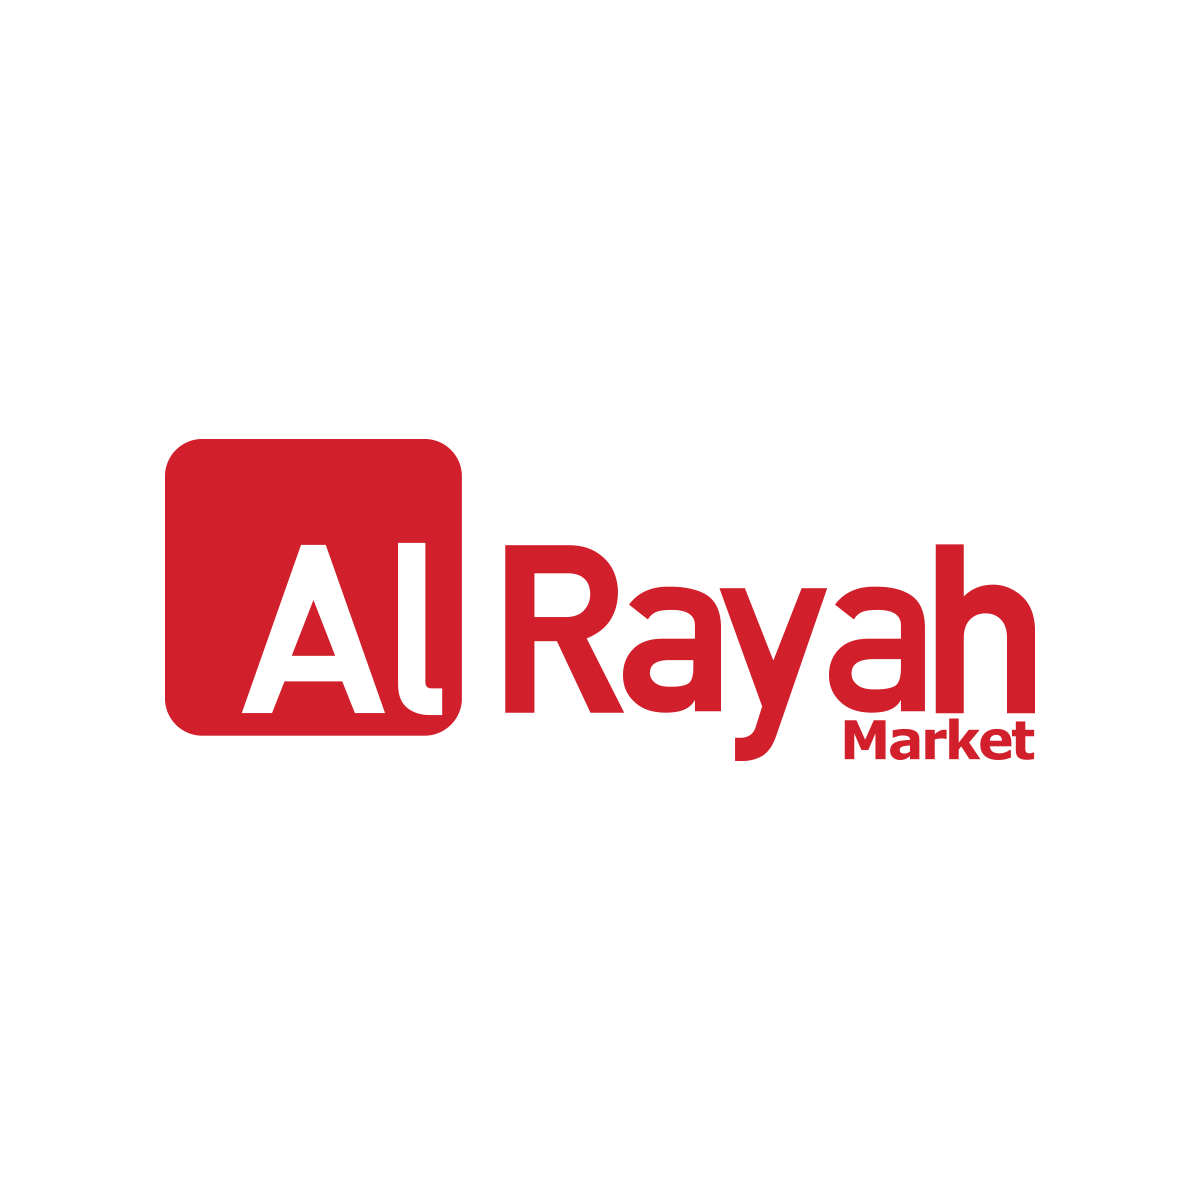 Alrayah Market